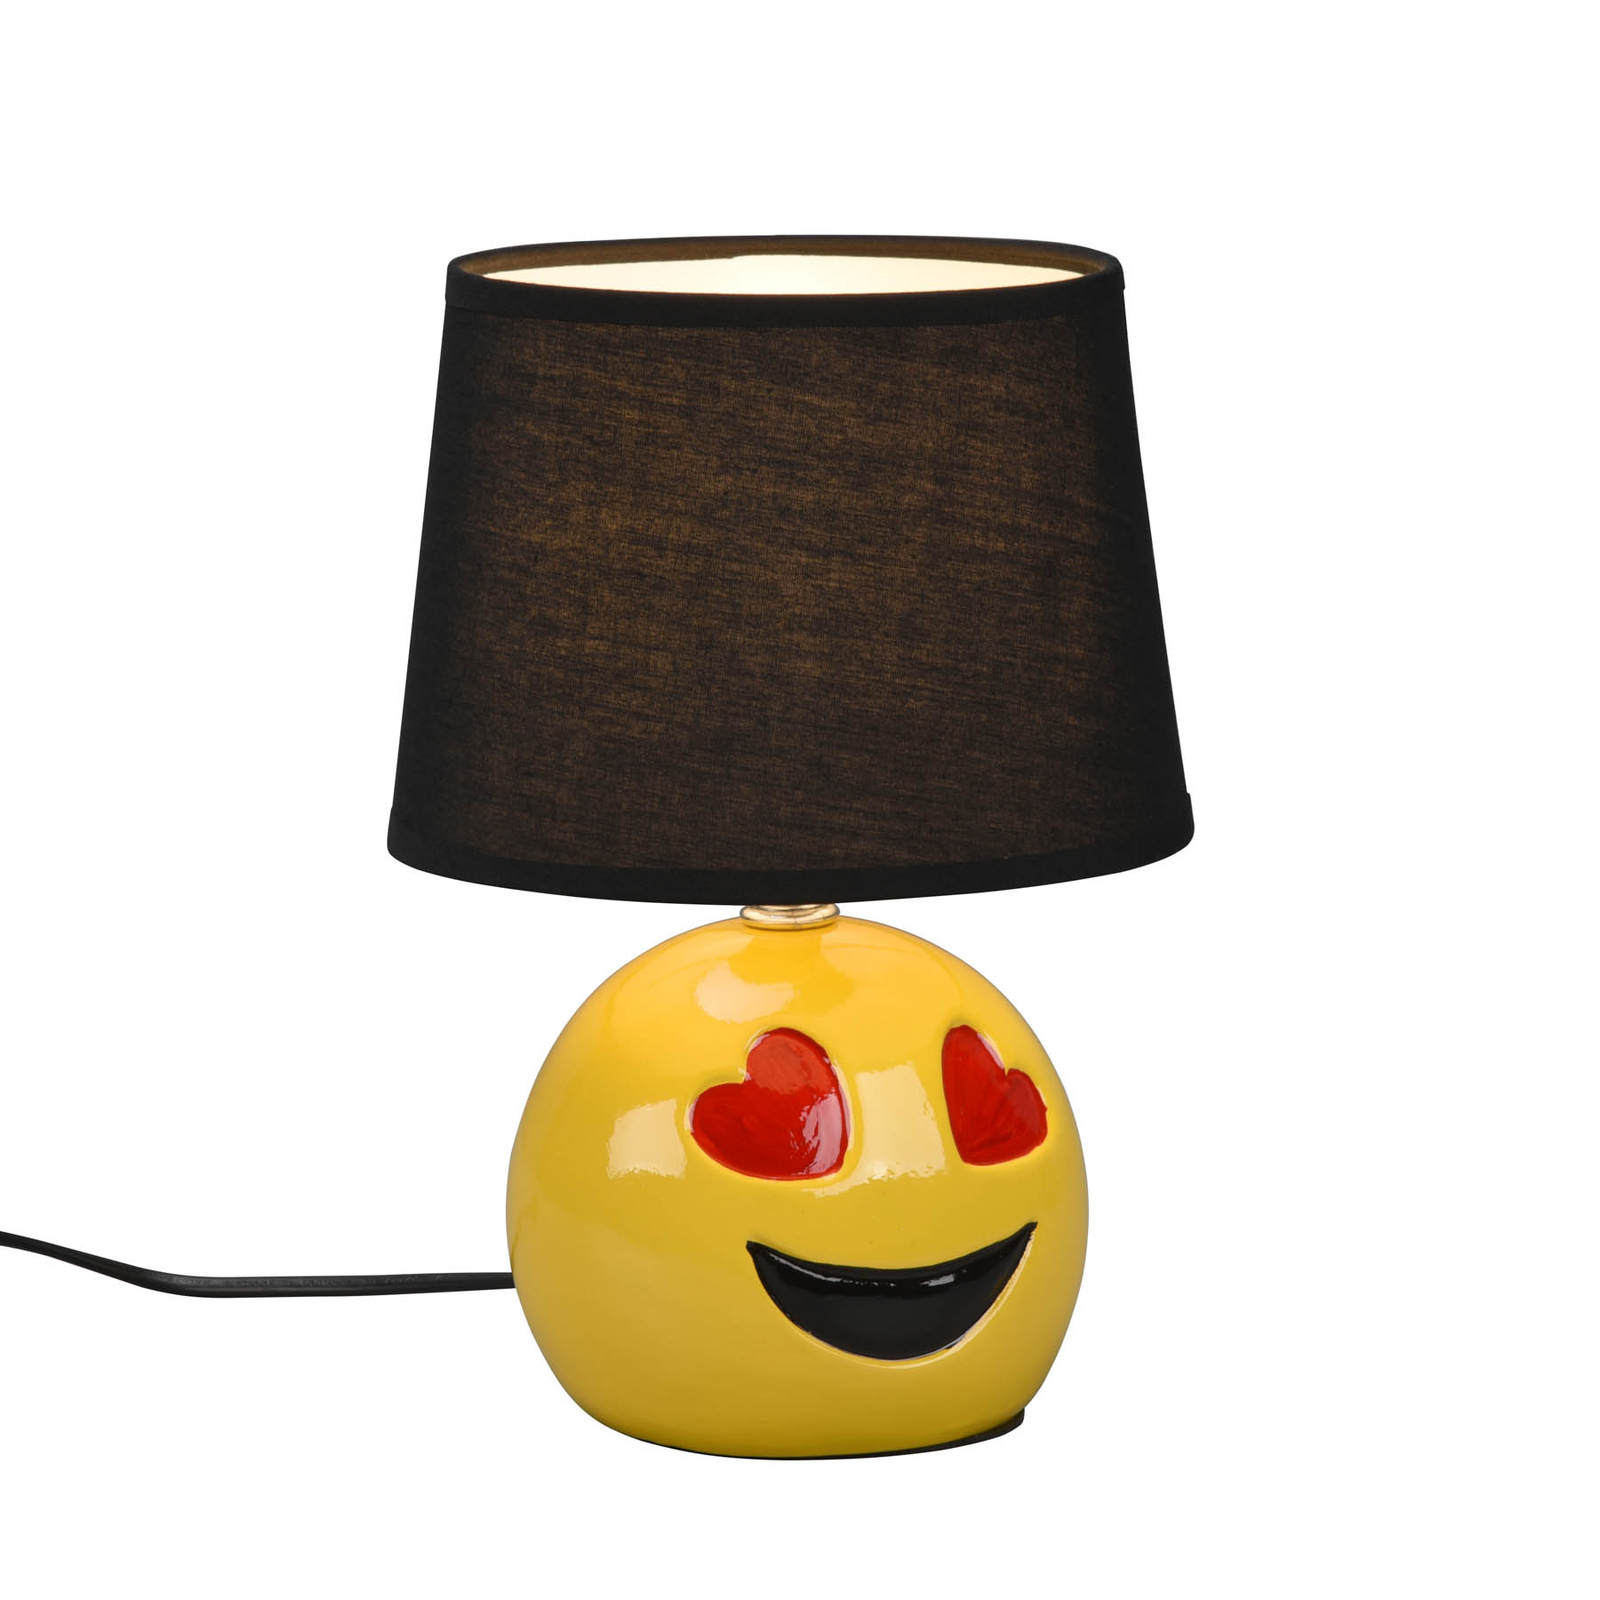 Bordlampe Lovely med smiley, stoffskjerm svart